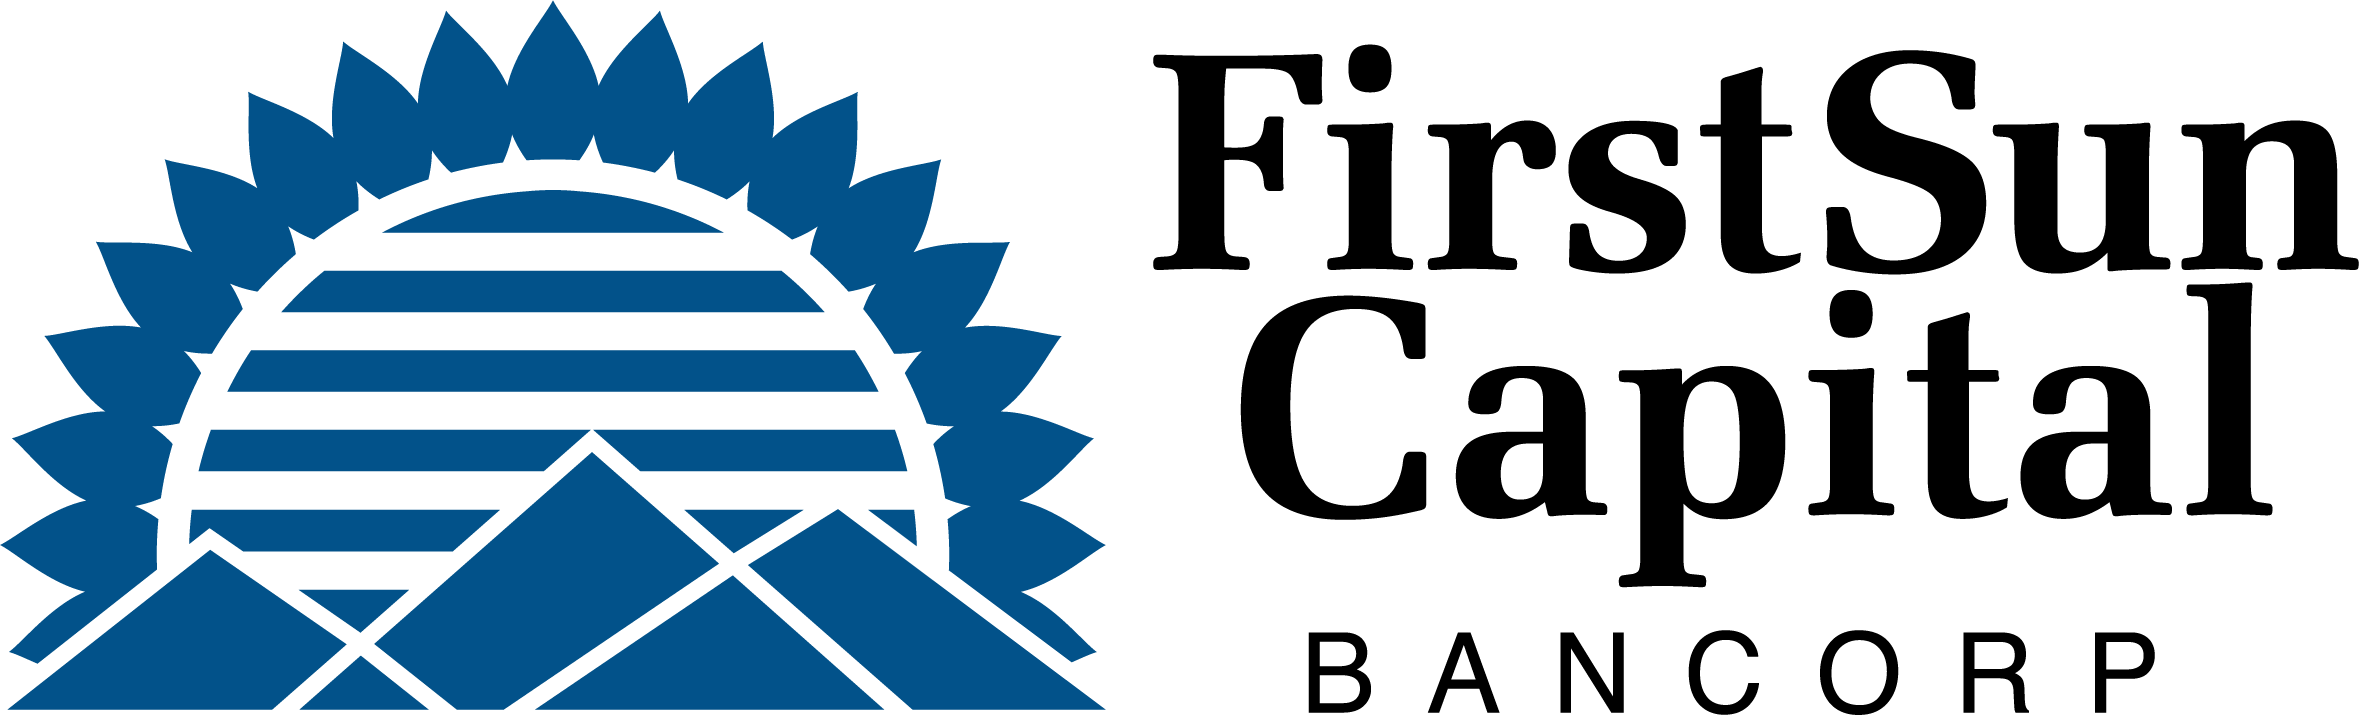 FirstSun Capital Bancorp Logo